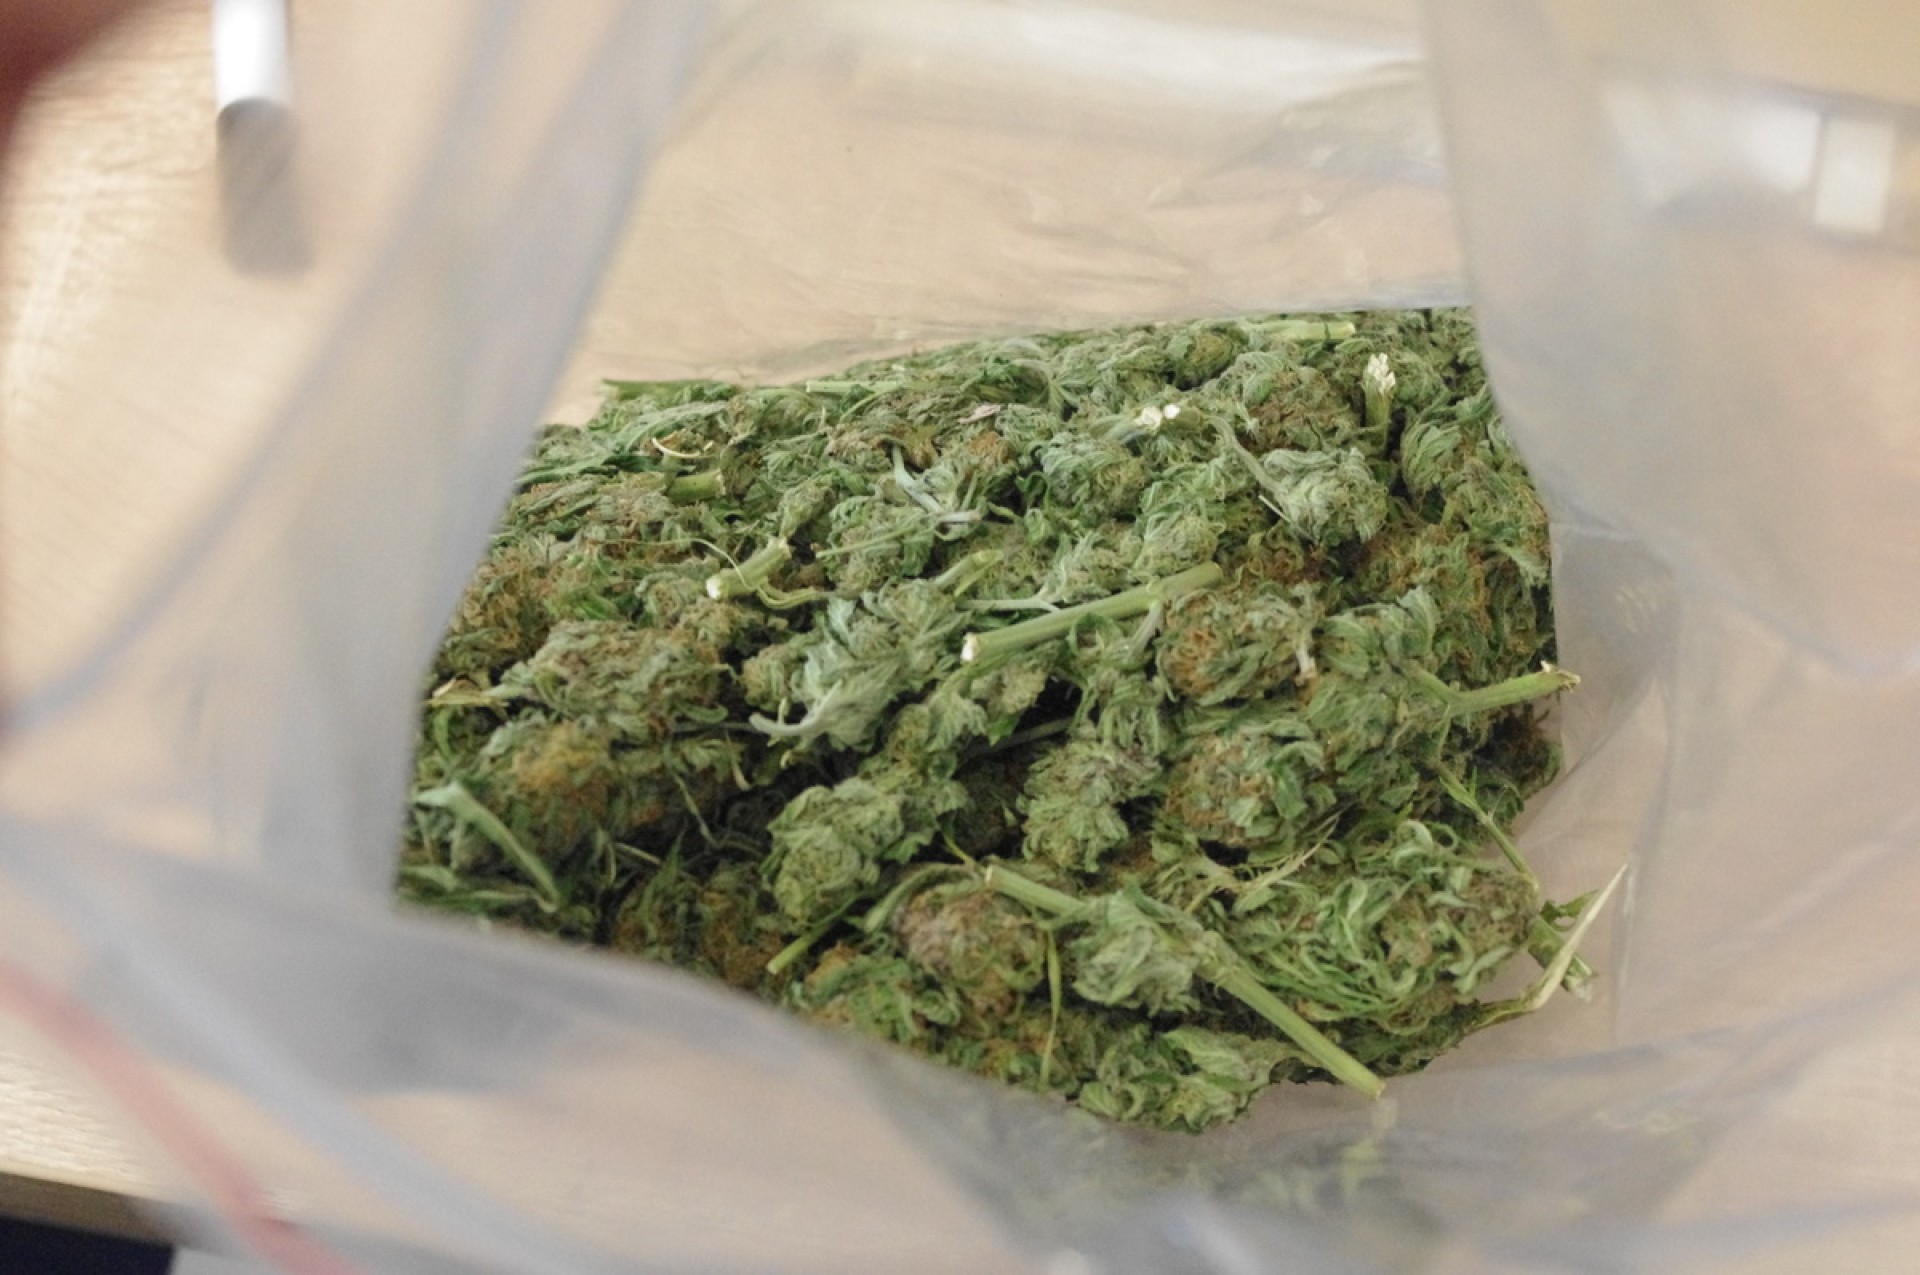 Narkotyki ponownie: Tym razem policjanci przejęli prawie kilogram różnych narkotyków